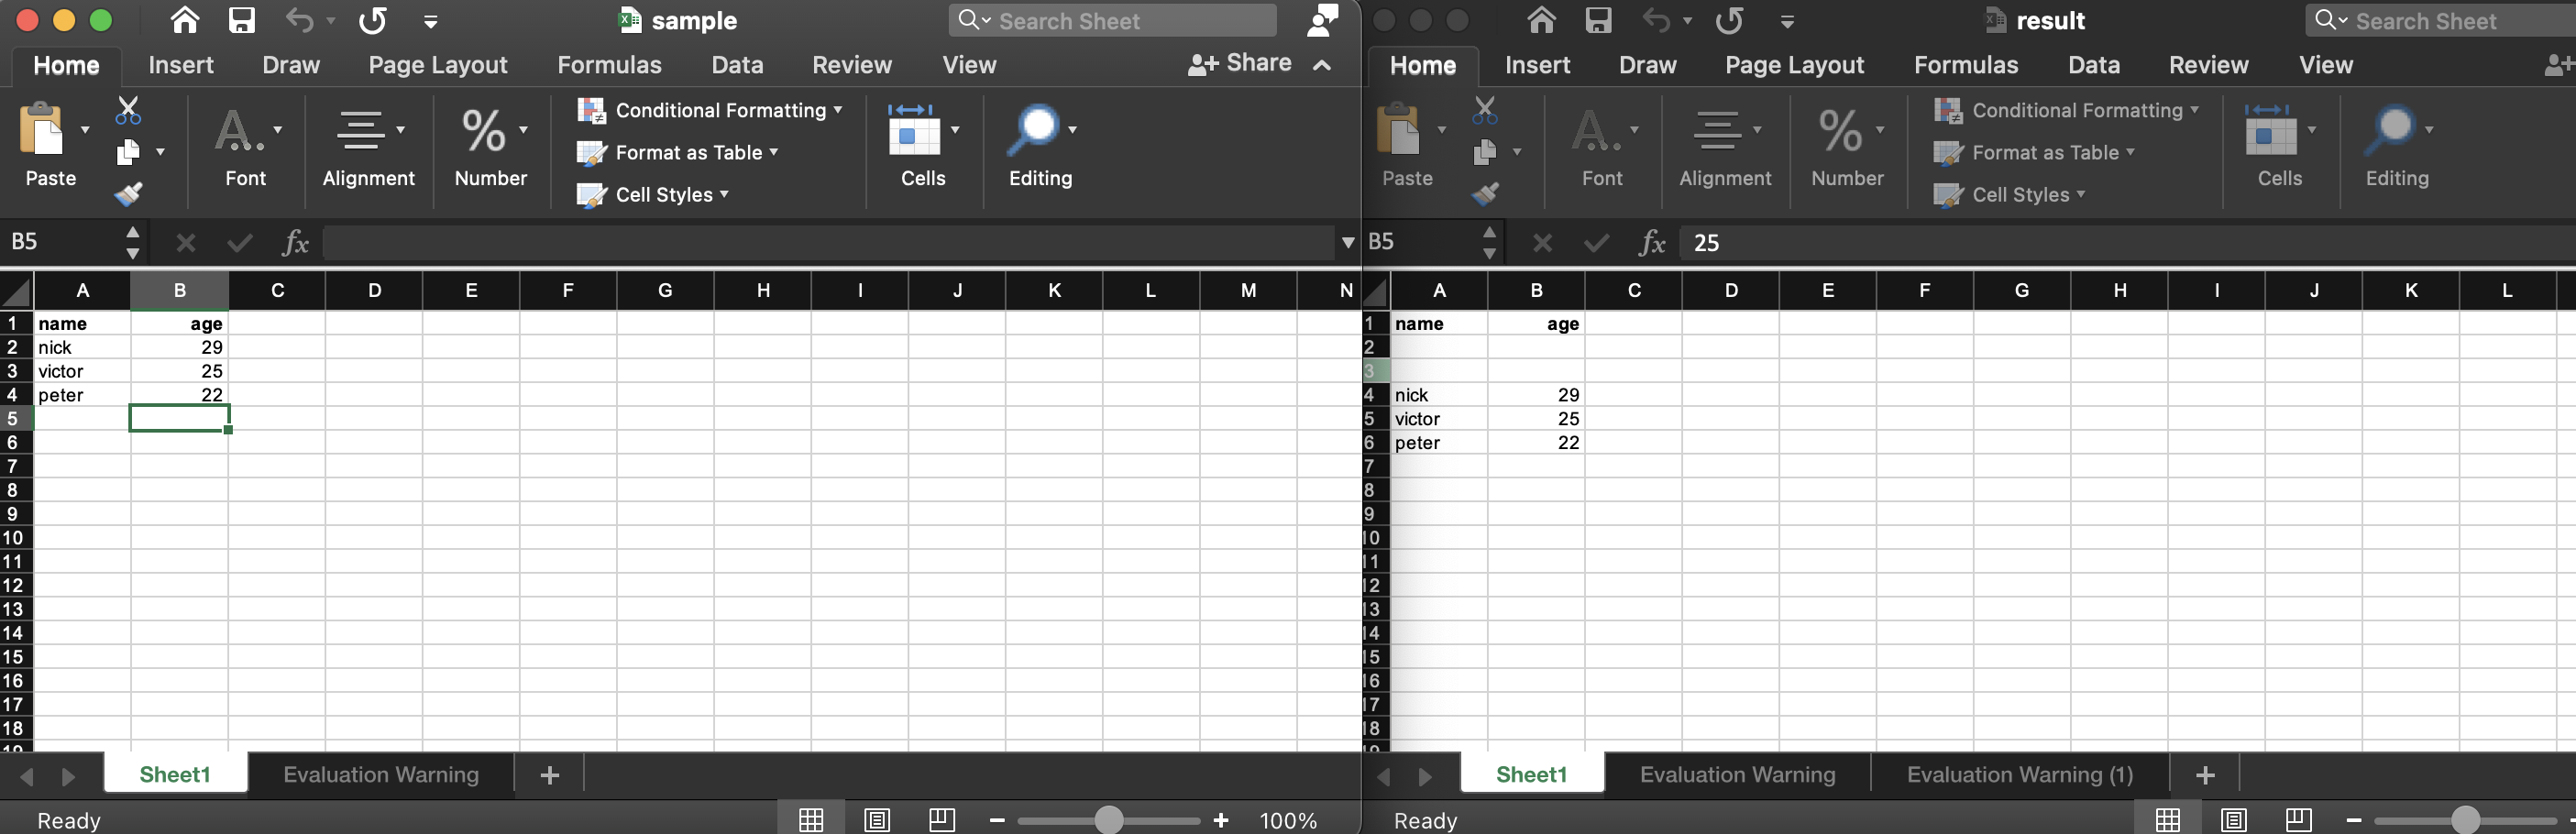 insérer des lignes et des colonnes dans un fichier Excel à l'aide de Node.js